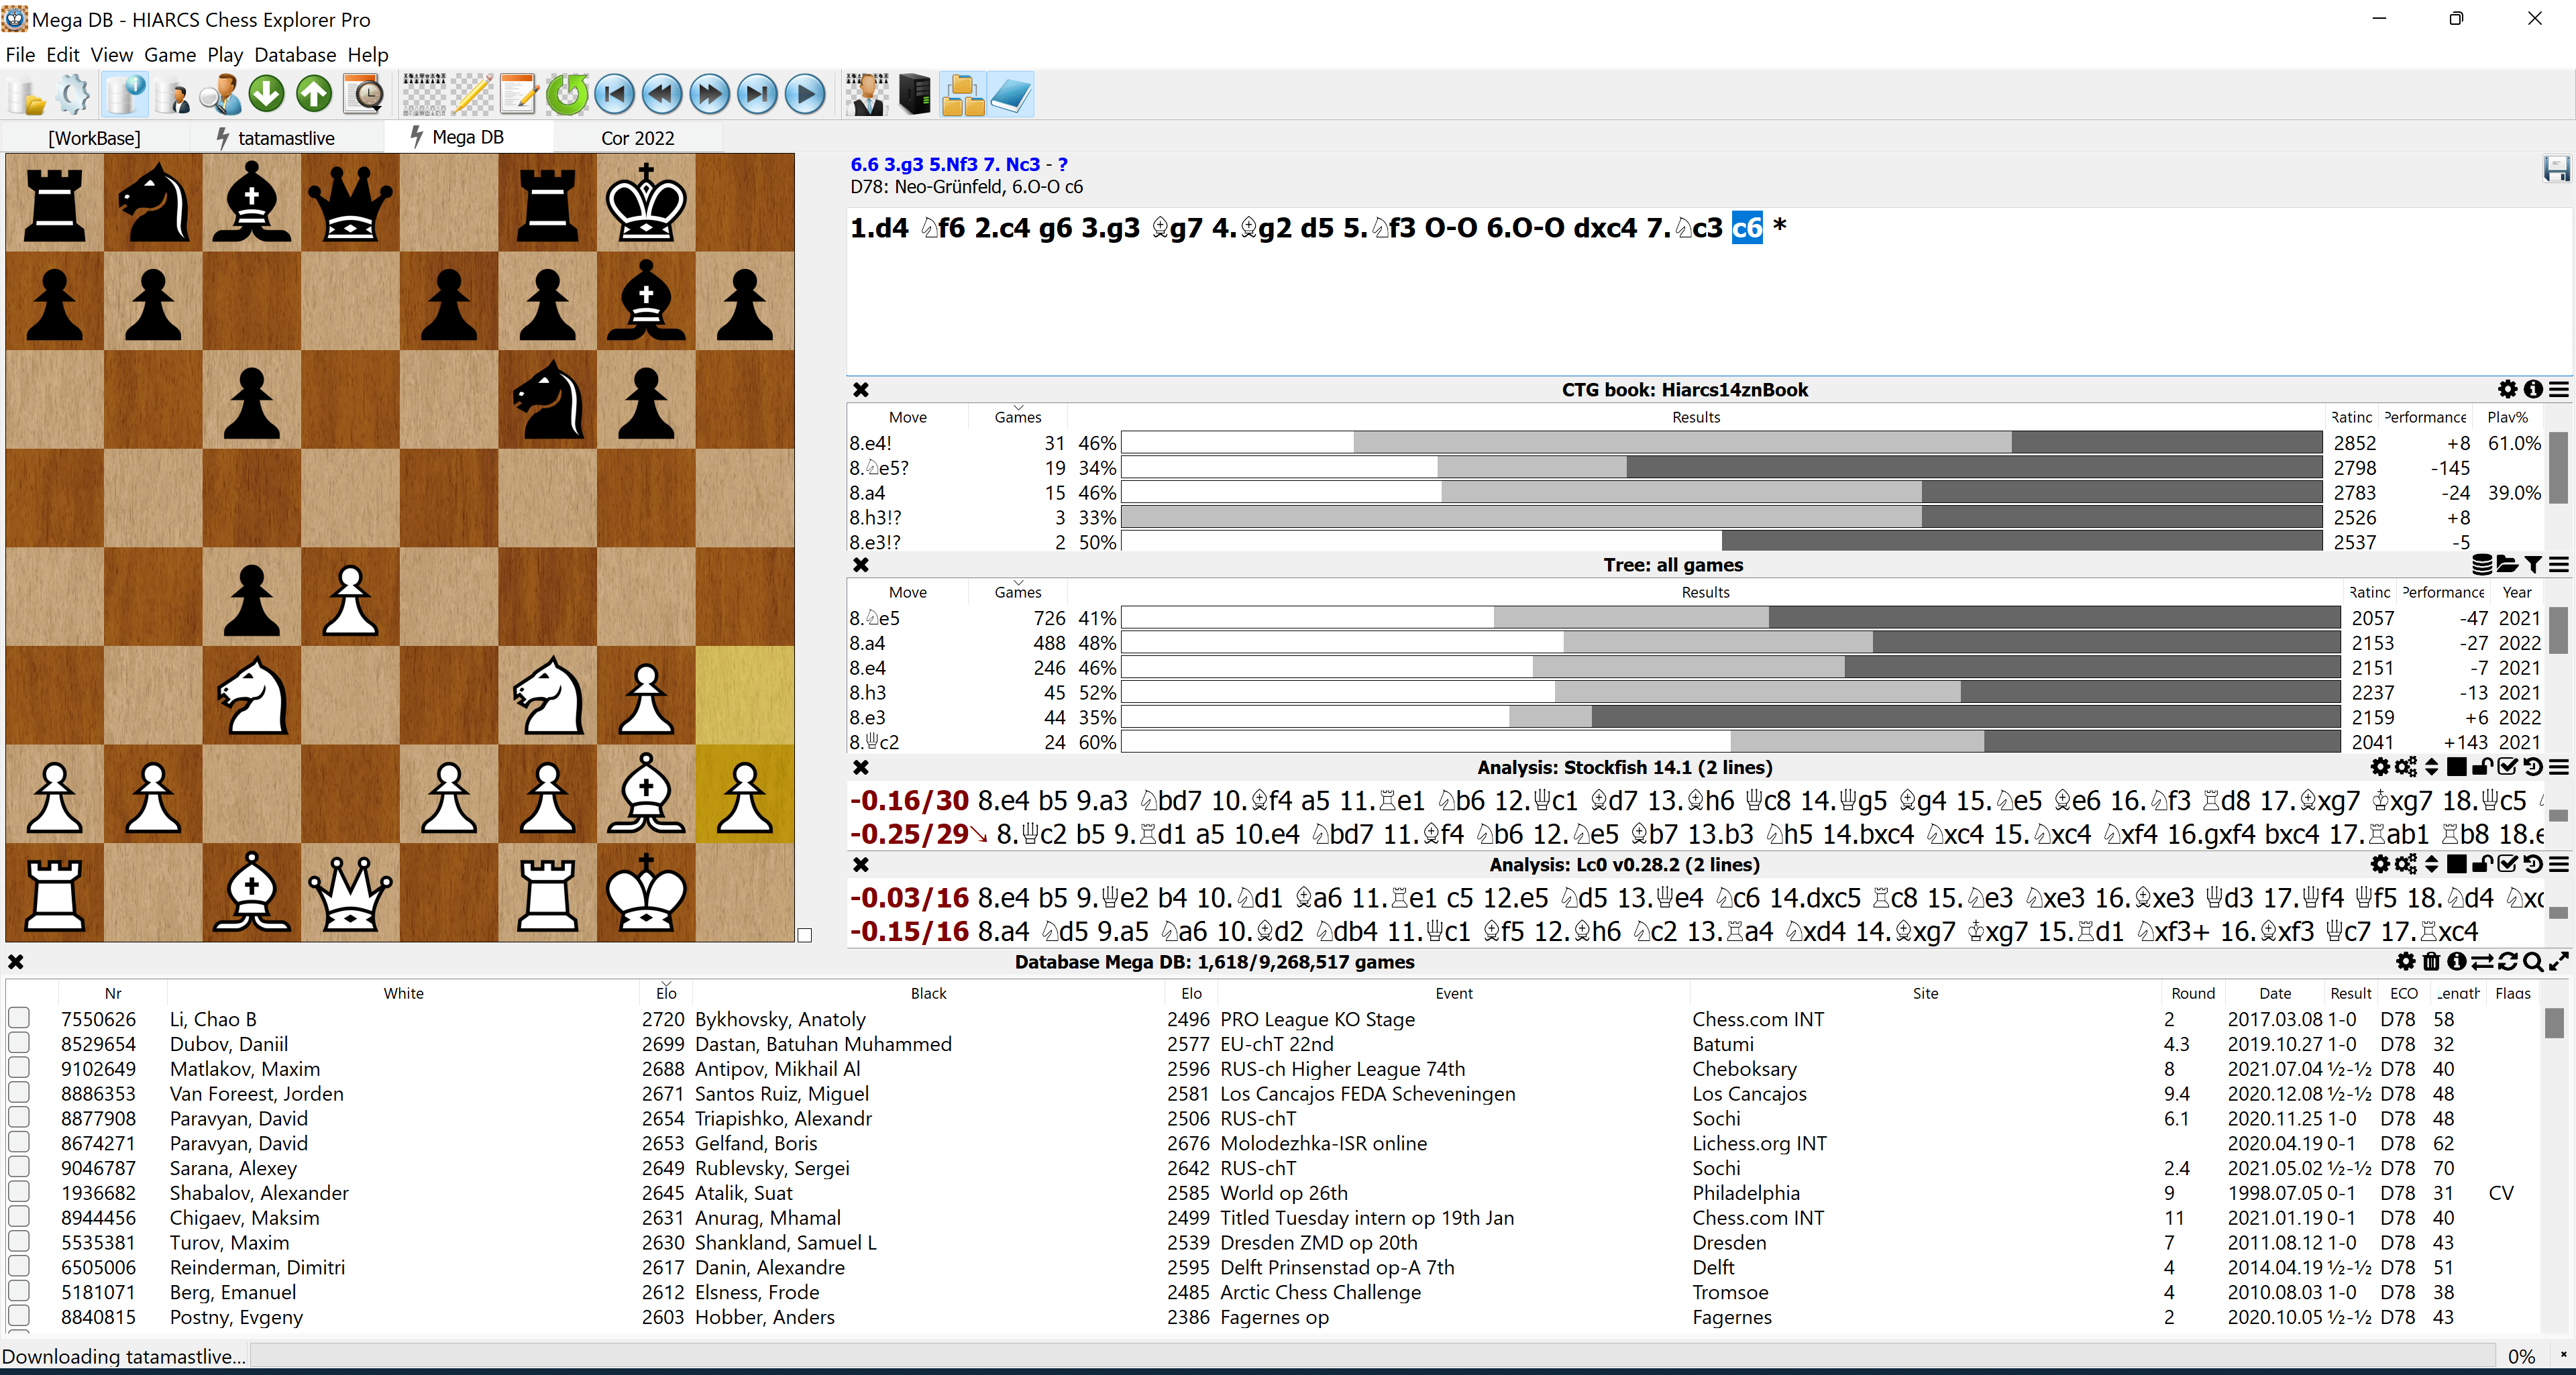 Steam Community :: ChessBase 17 SE